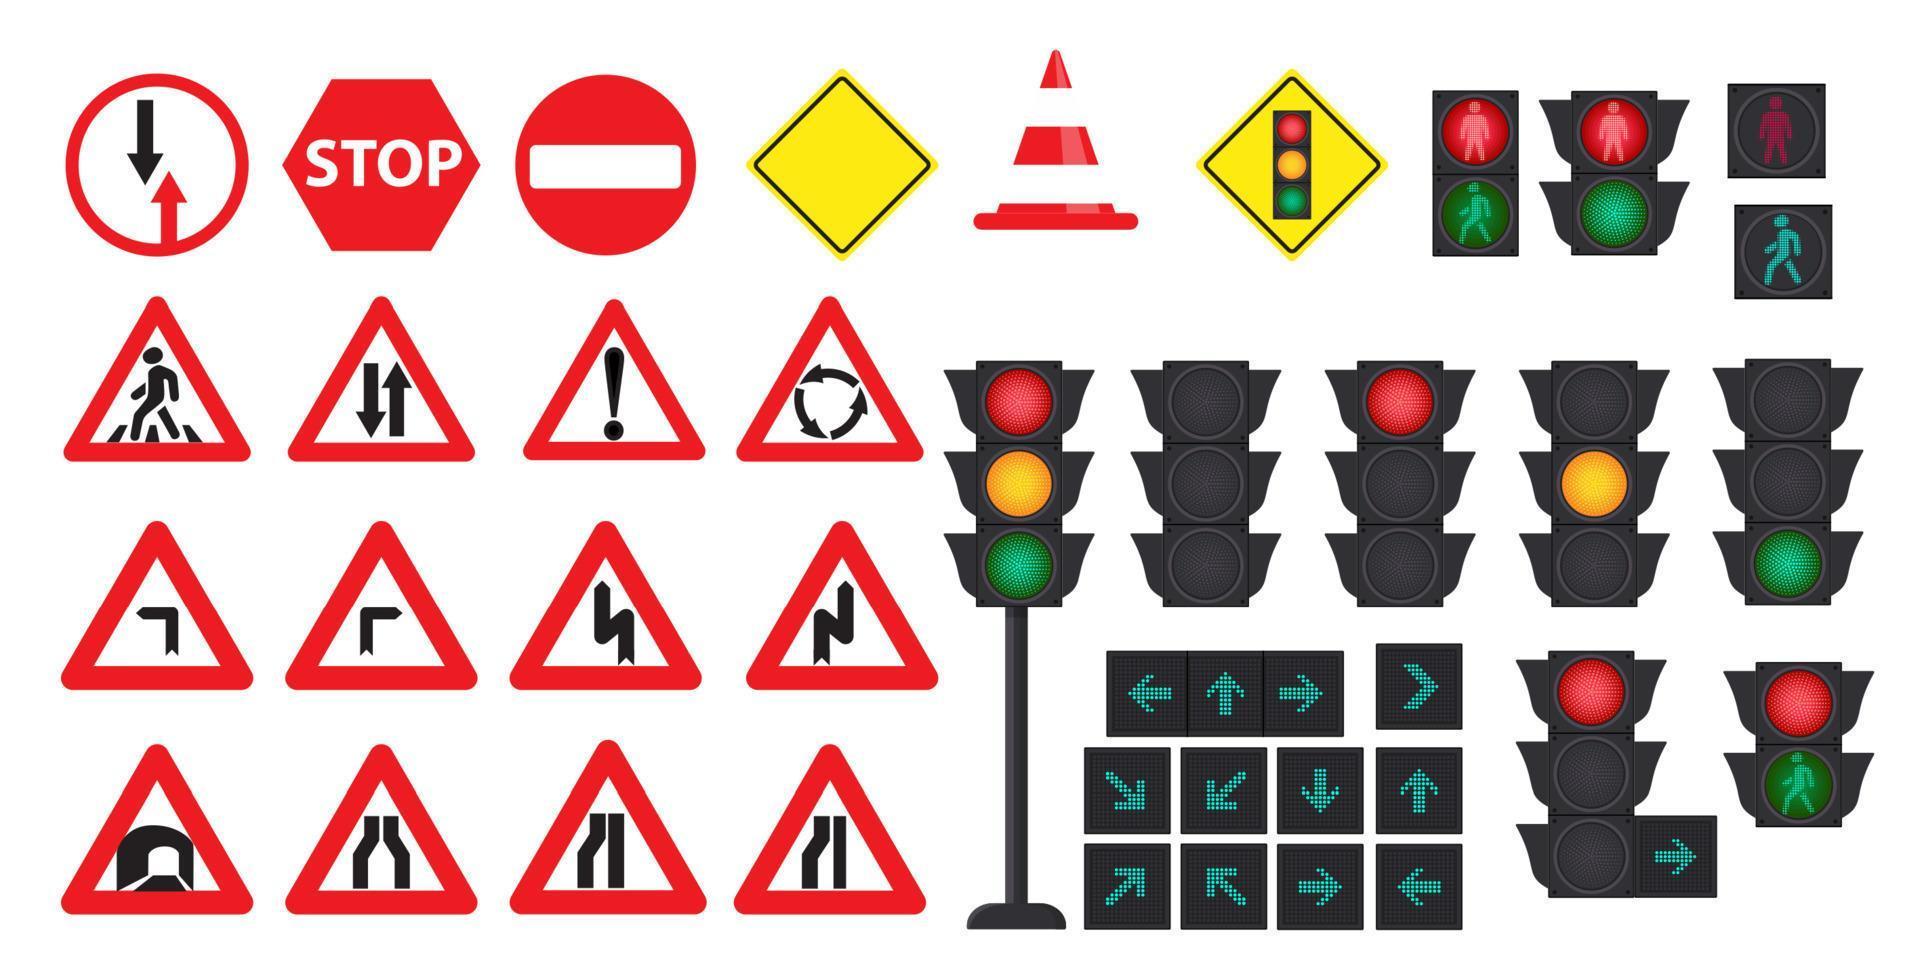 trafik begrepp med trafik lampor och väg tecken. vektor illustration